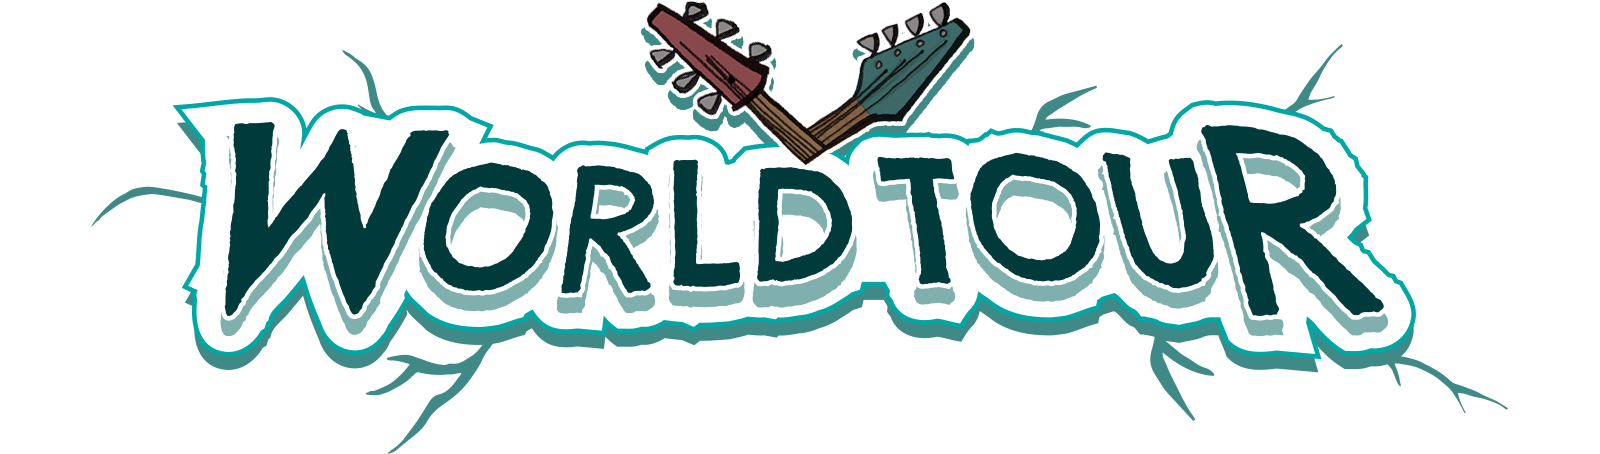 World tour logo